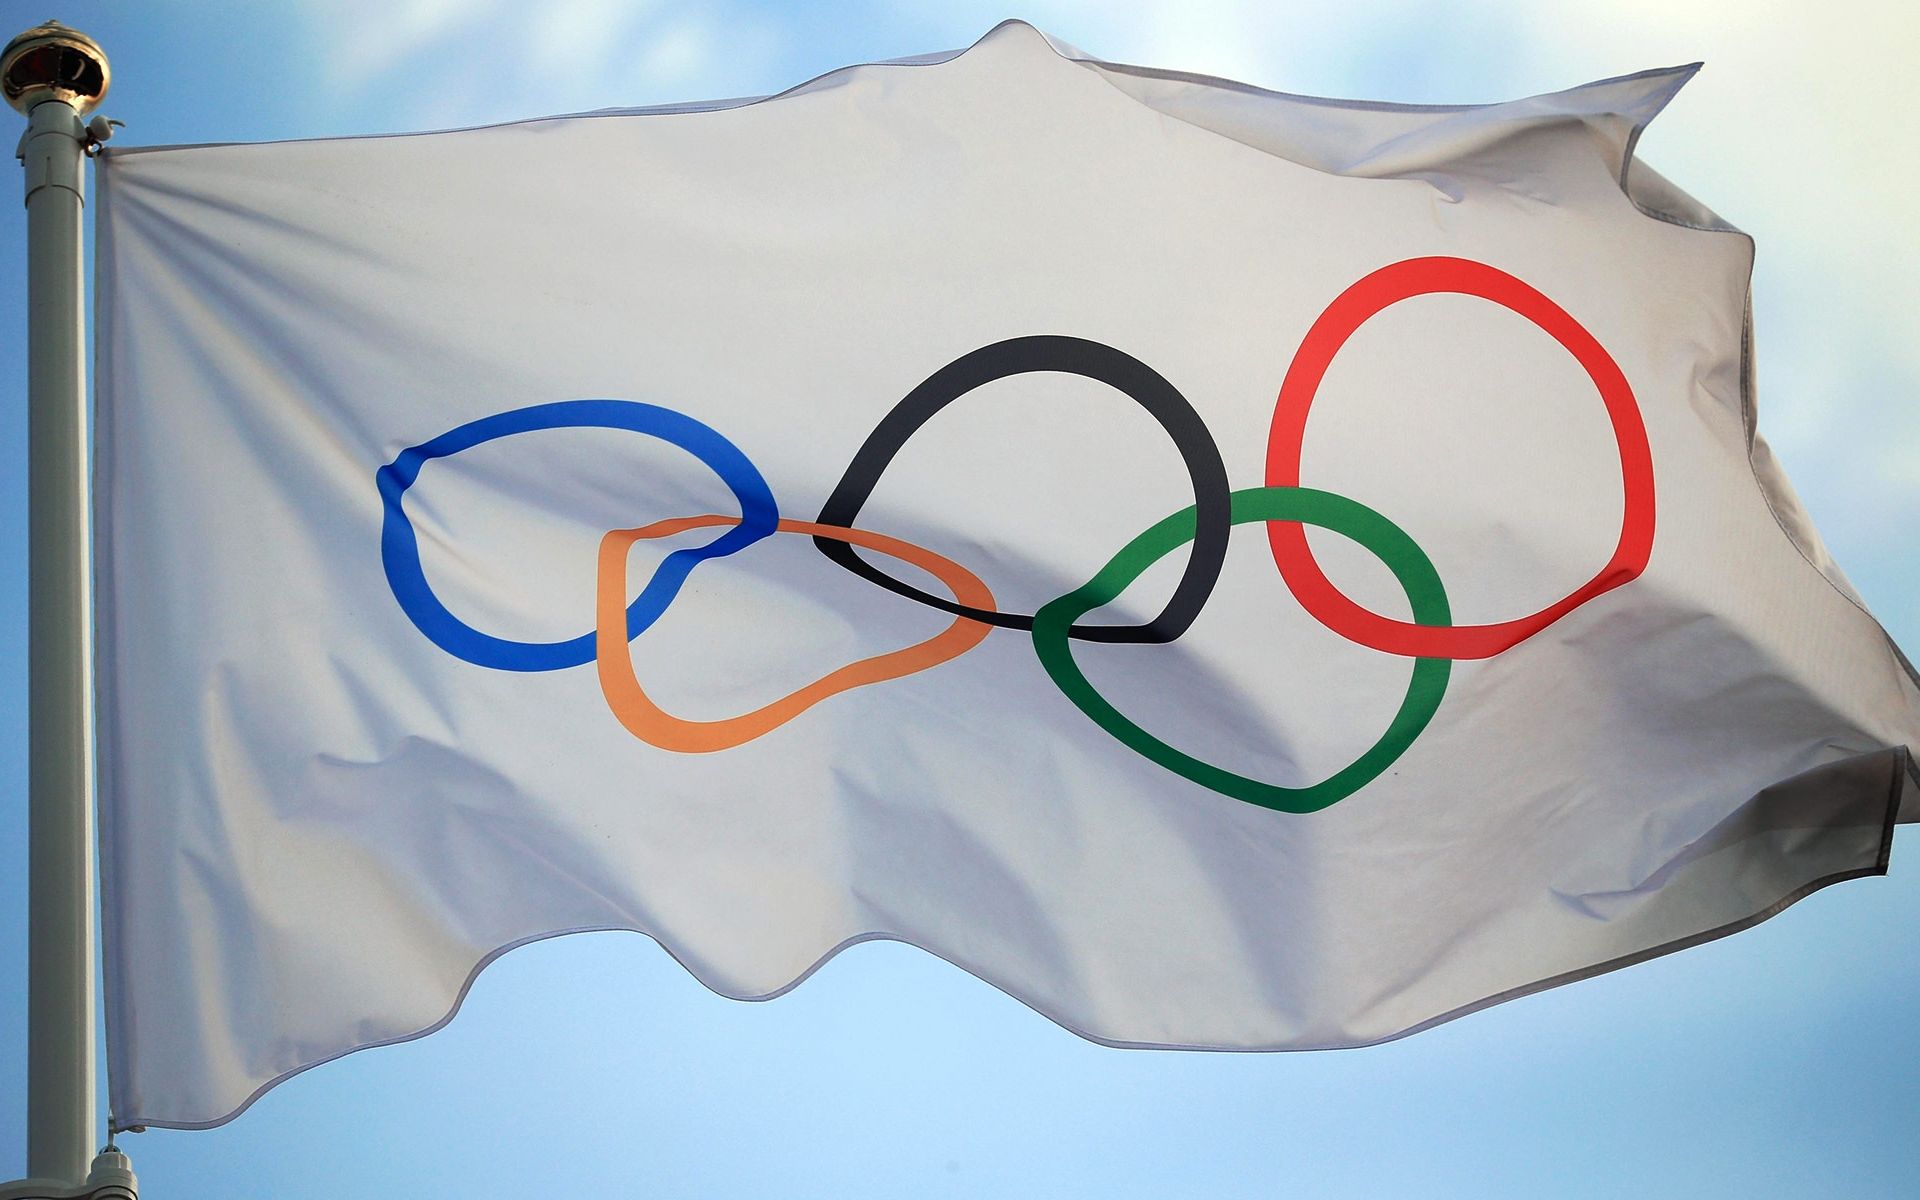 东京奥运会第三次防疫会议结束 强调各参赛代表团需监督运动员戴口罩